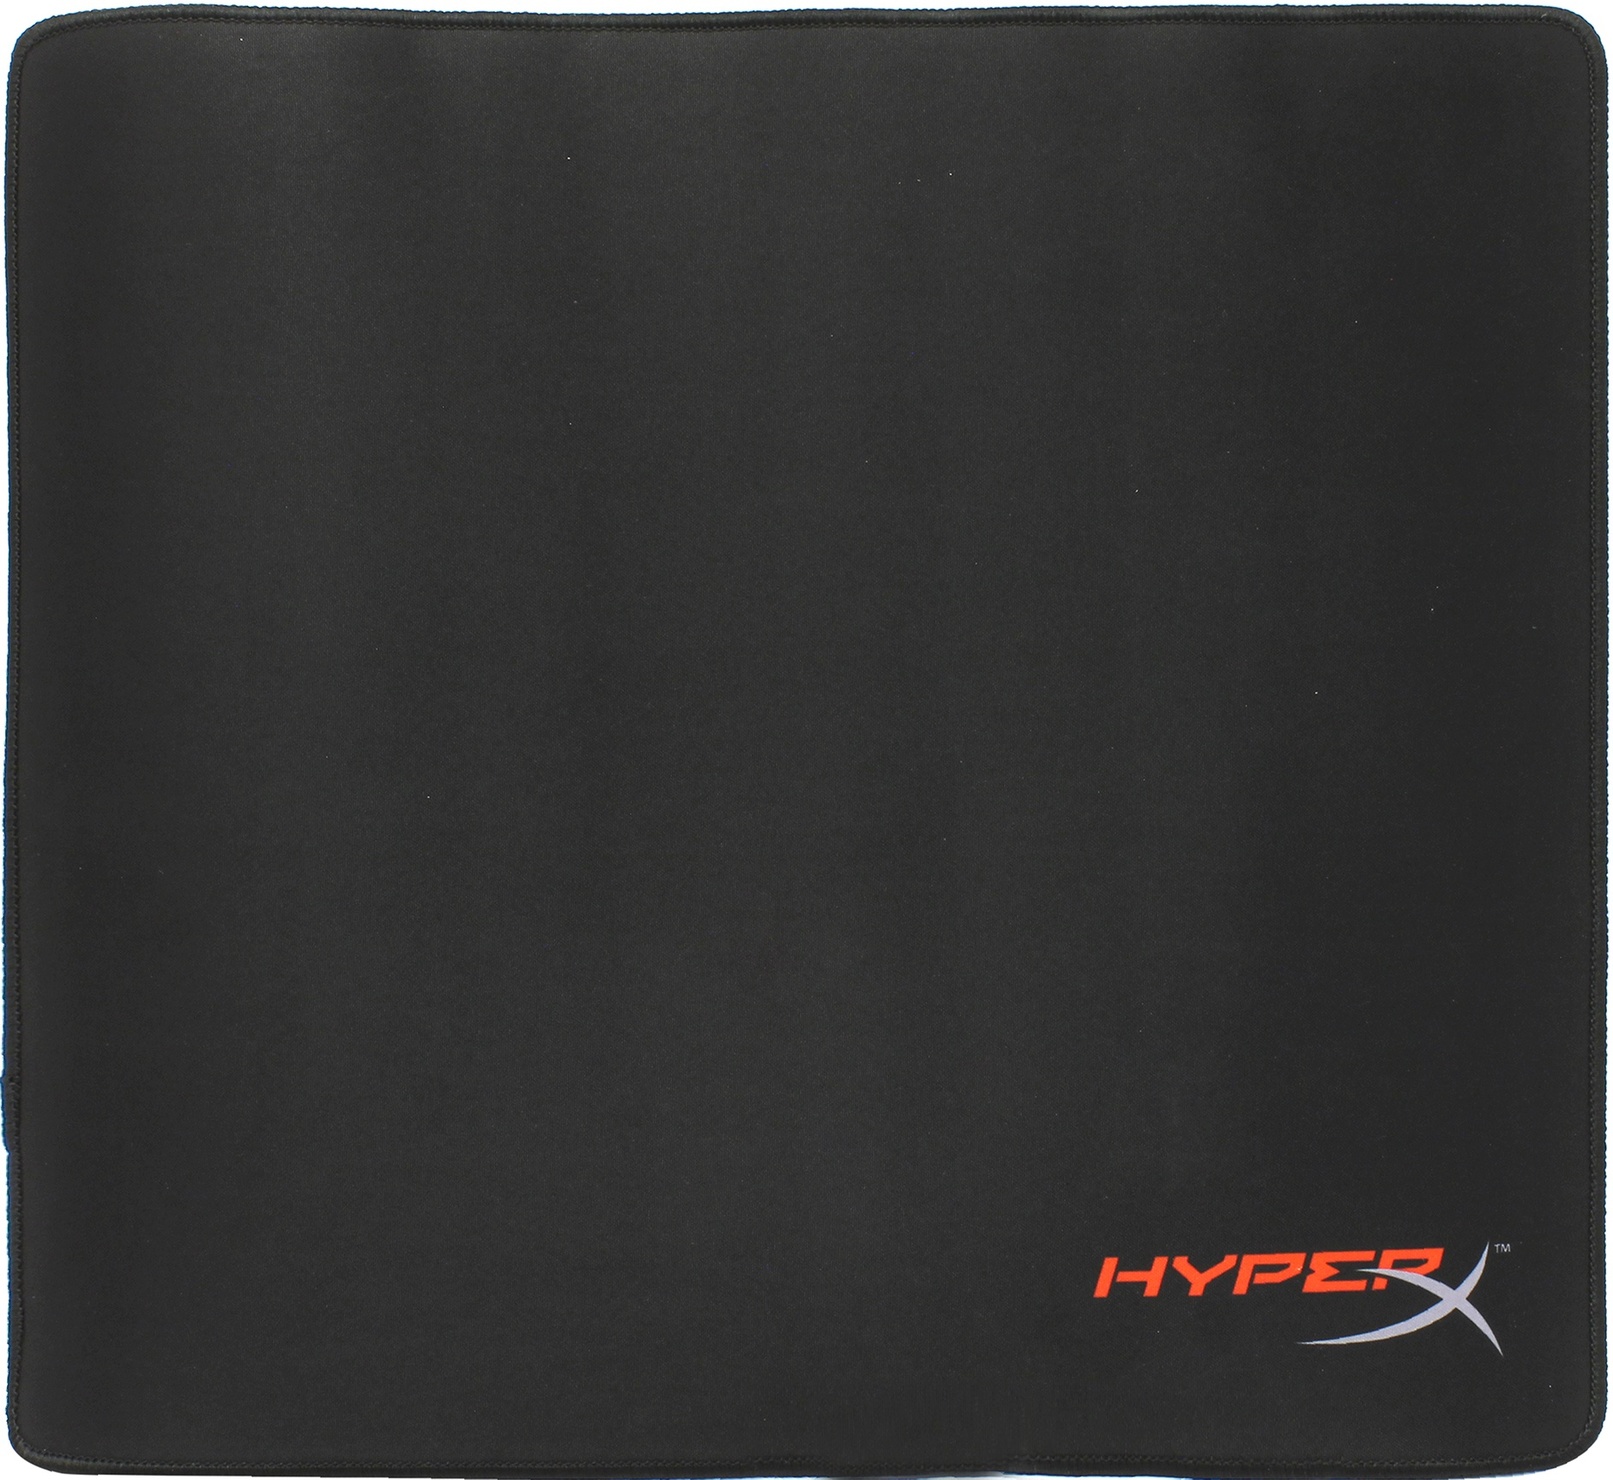 Коврик для мыши Kingston HyperX FURY S Pro L, игровой, 450x400x4mm, черный (HX-MPFS-L)